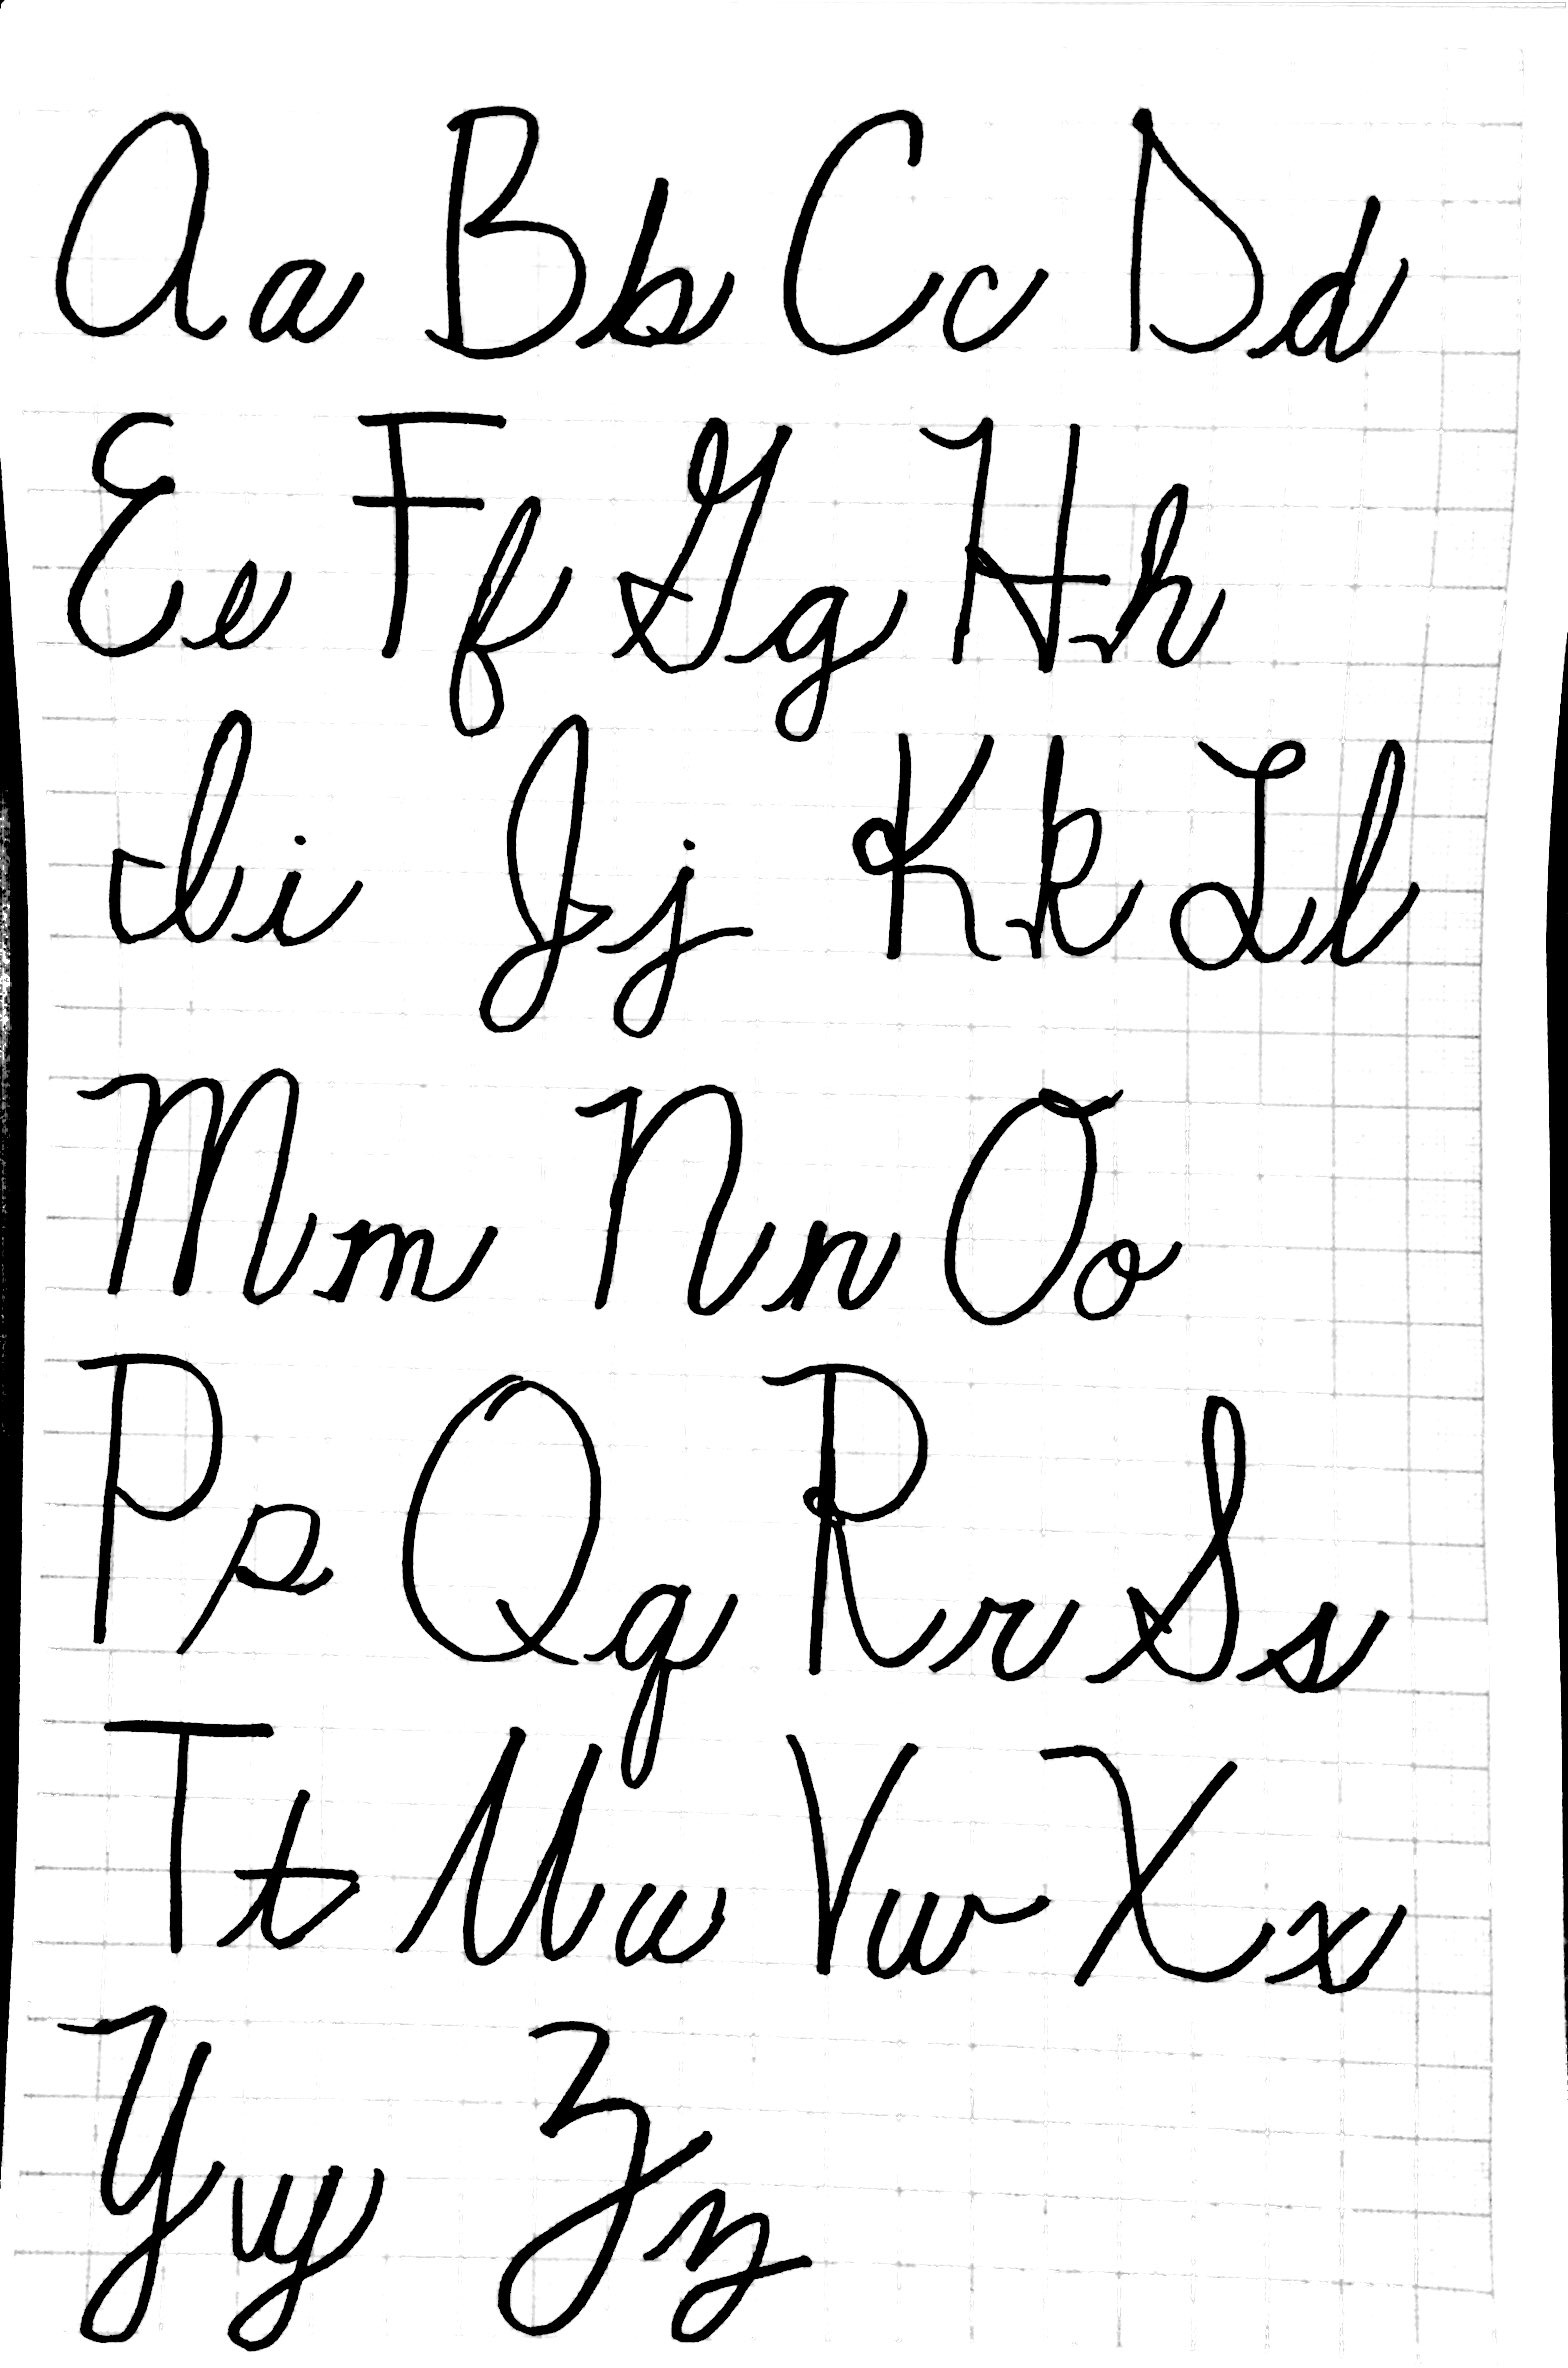 hebrew cursive font free download